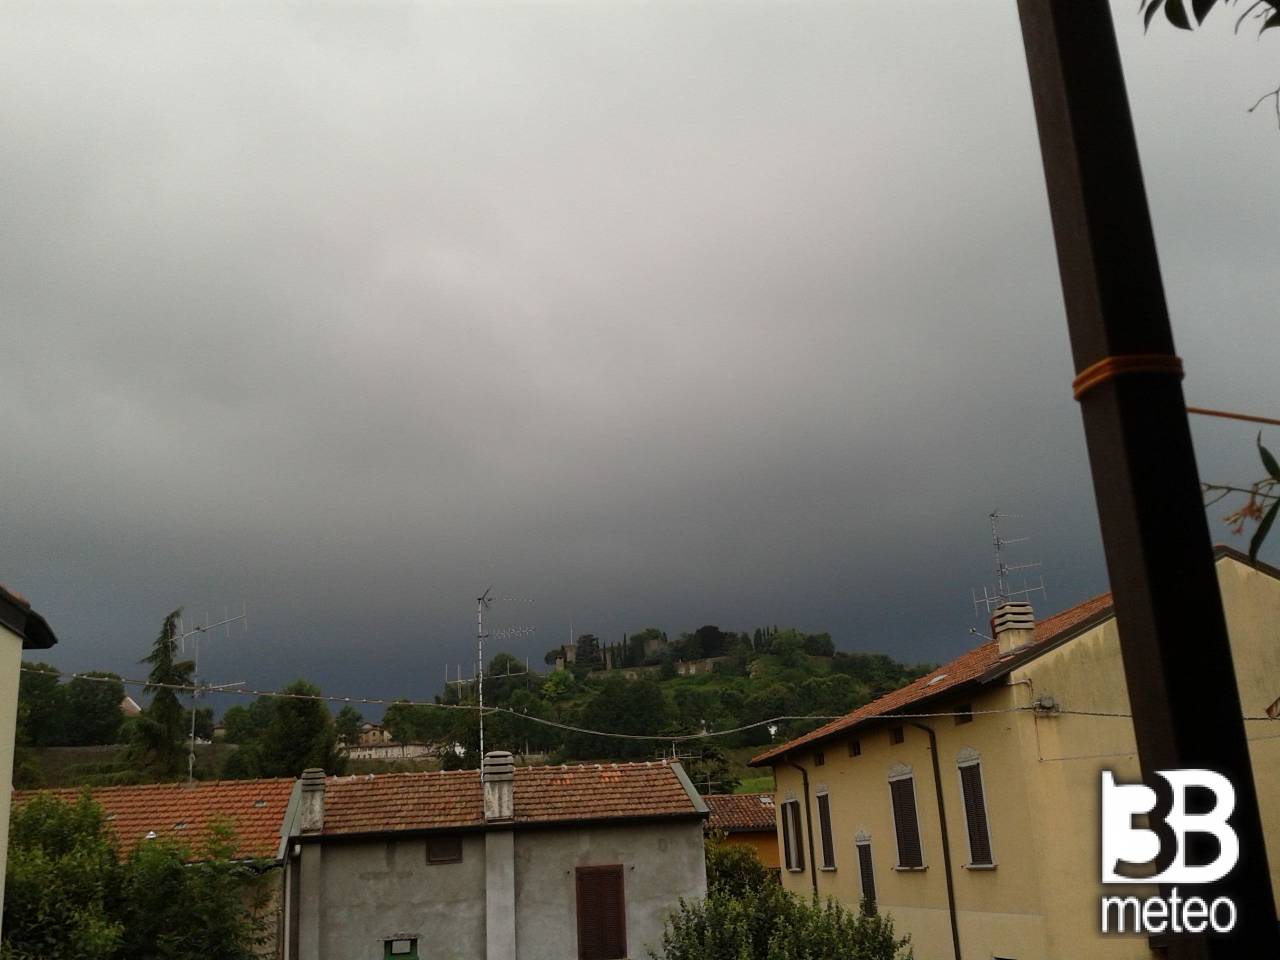 Meteo Bergamo: piogge martedì, qualche possibile rovescio mercoledì, piogge giovedì - 3bmeteo